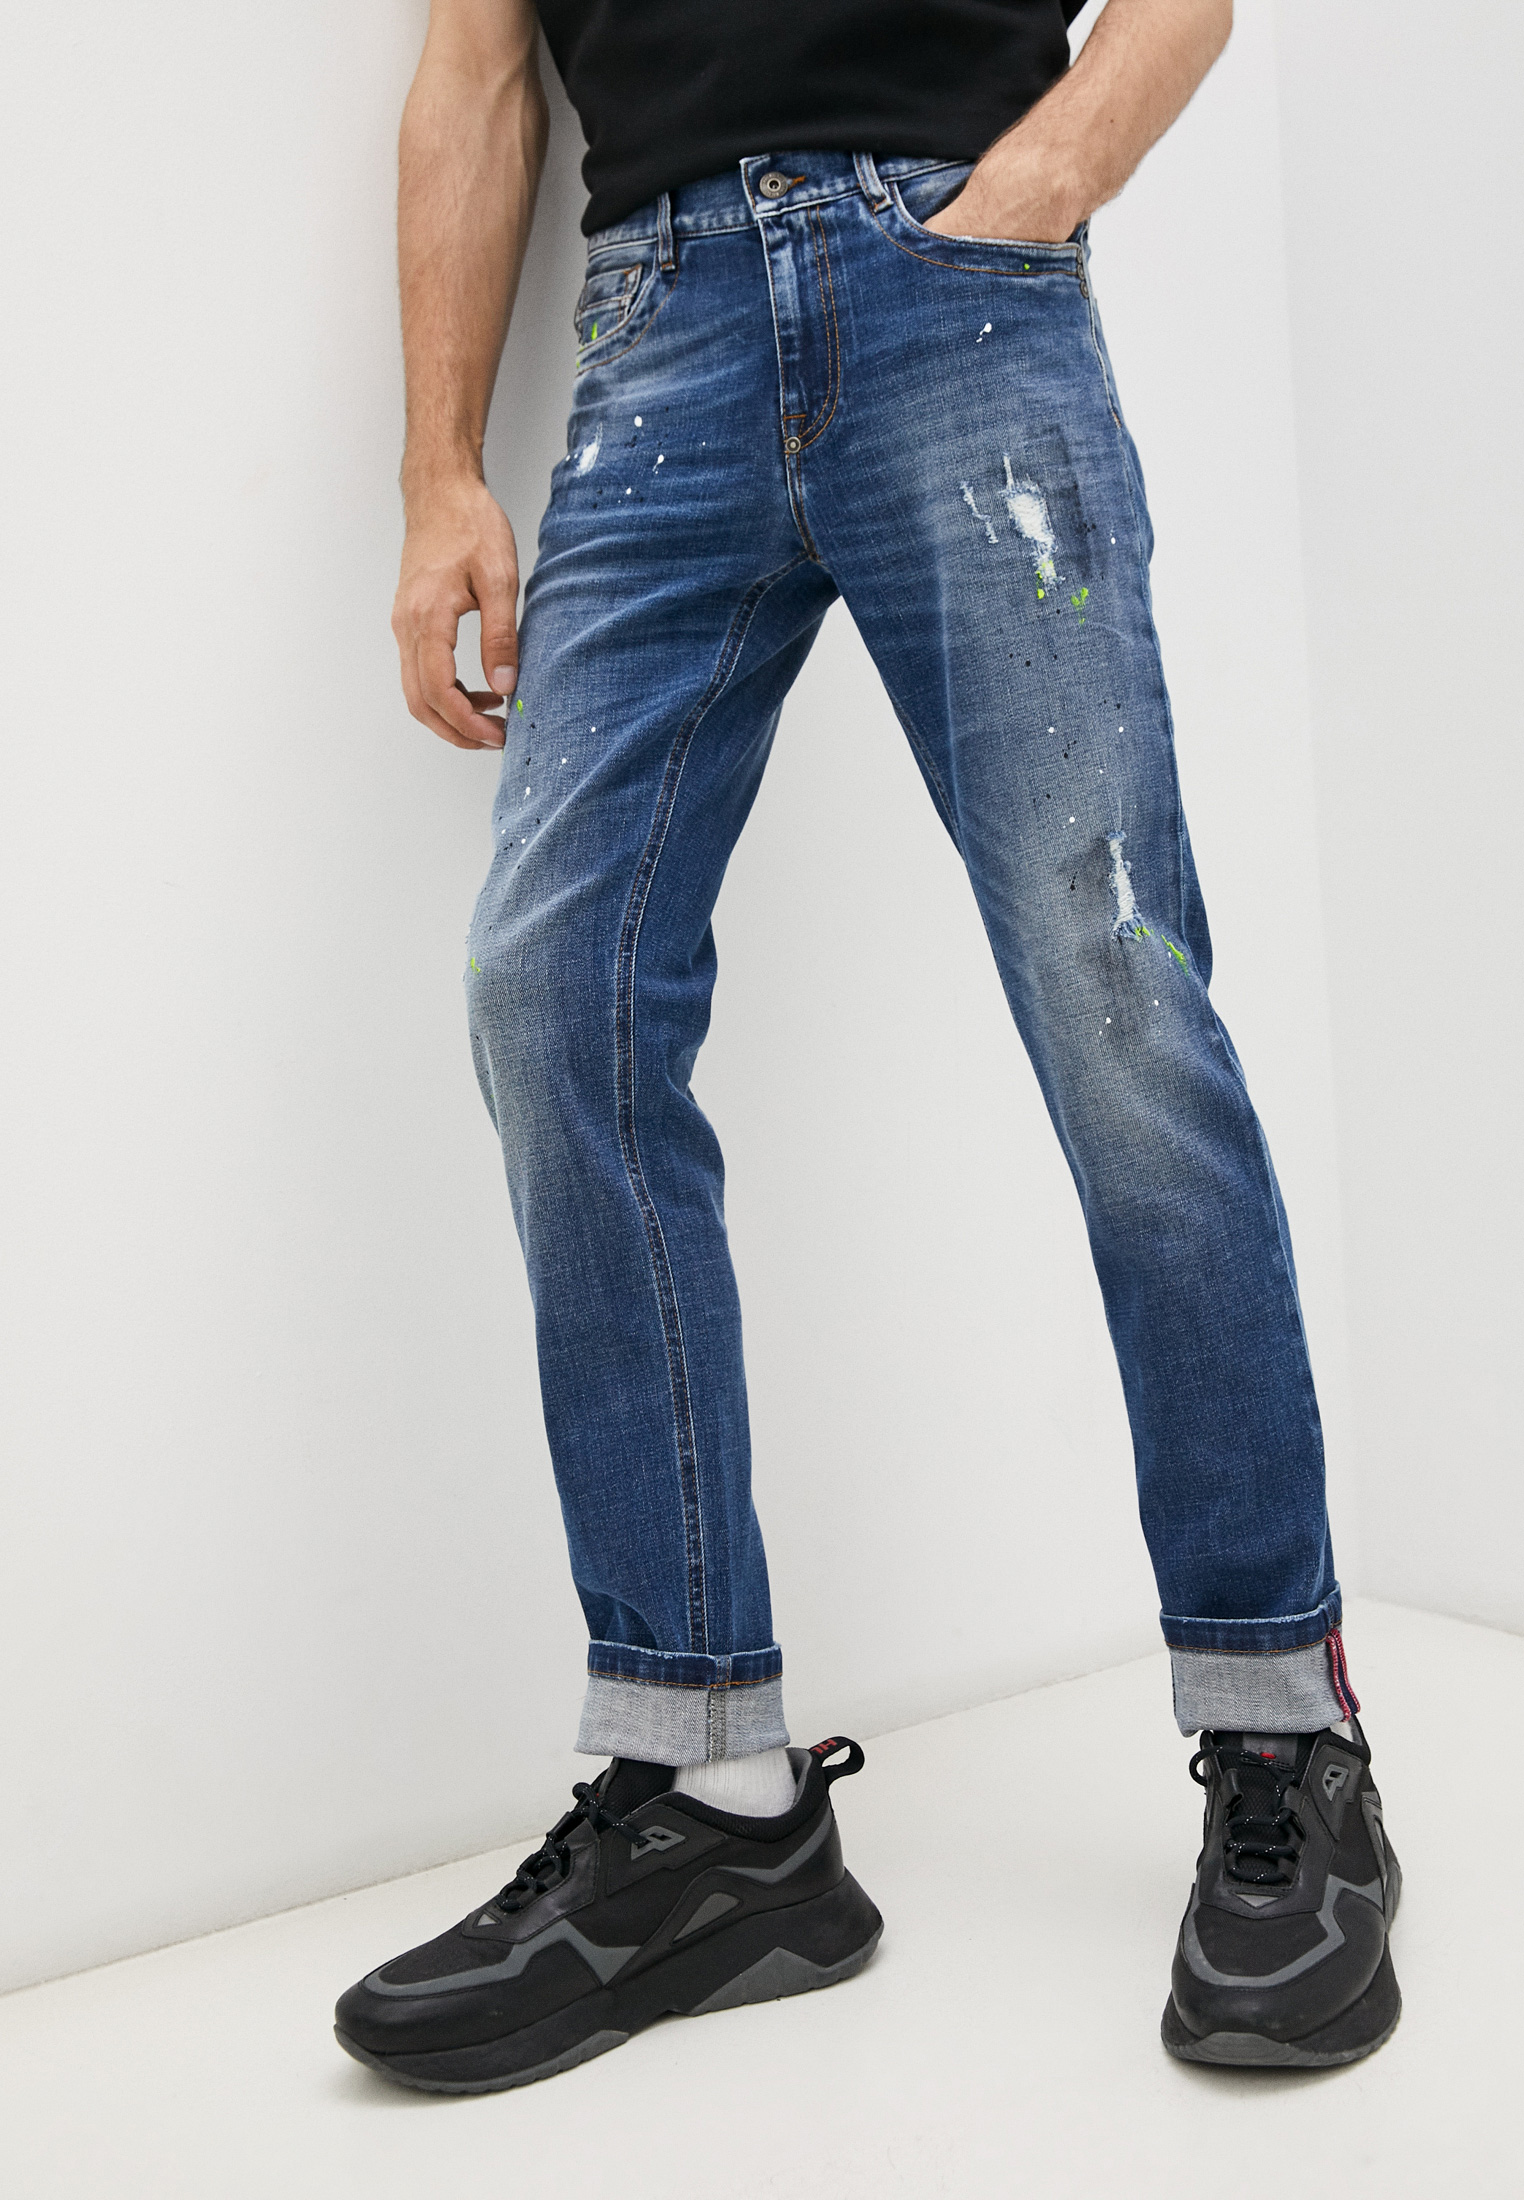 Мужские зауженные джинсы Bikkembergs (Биккембергс) C Q 101 09 S 3182: изображение 1